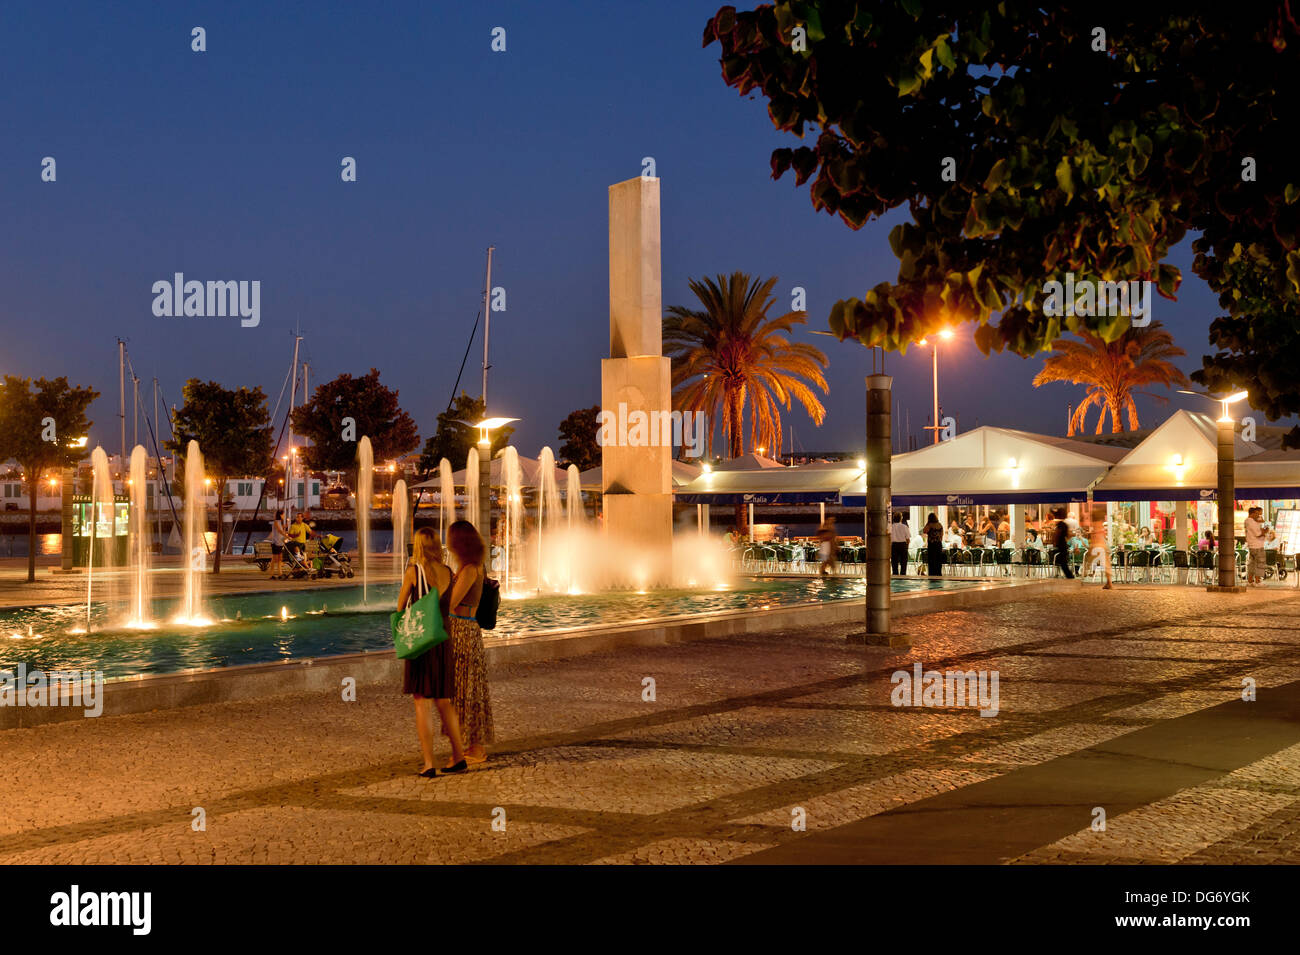 Le Portugal, l'Algarve, Portimao, fontaines de la place principale, la Praca da Republica de nuit Banque D'Images